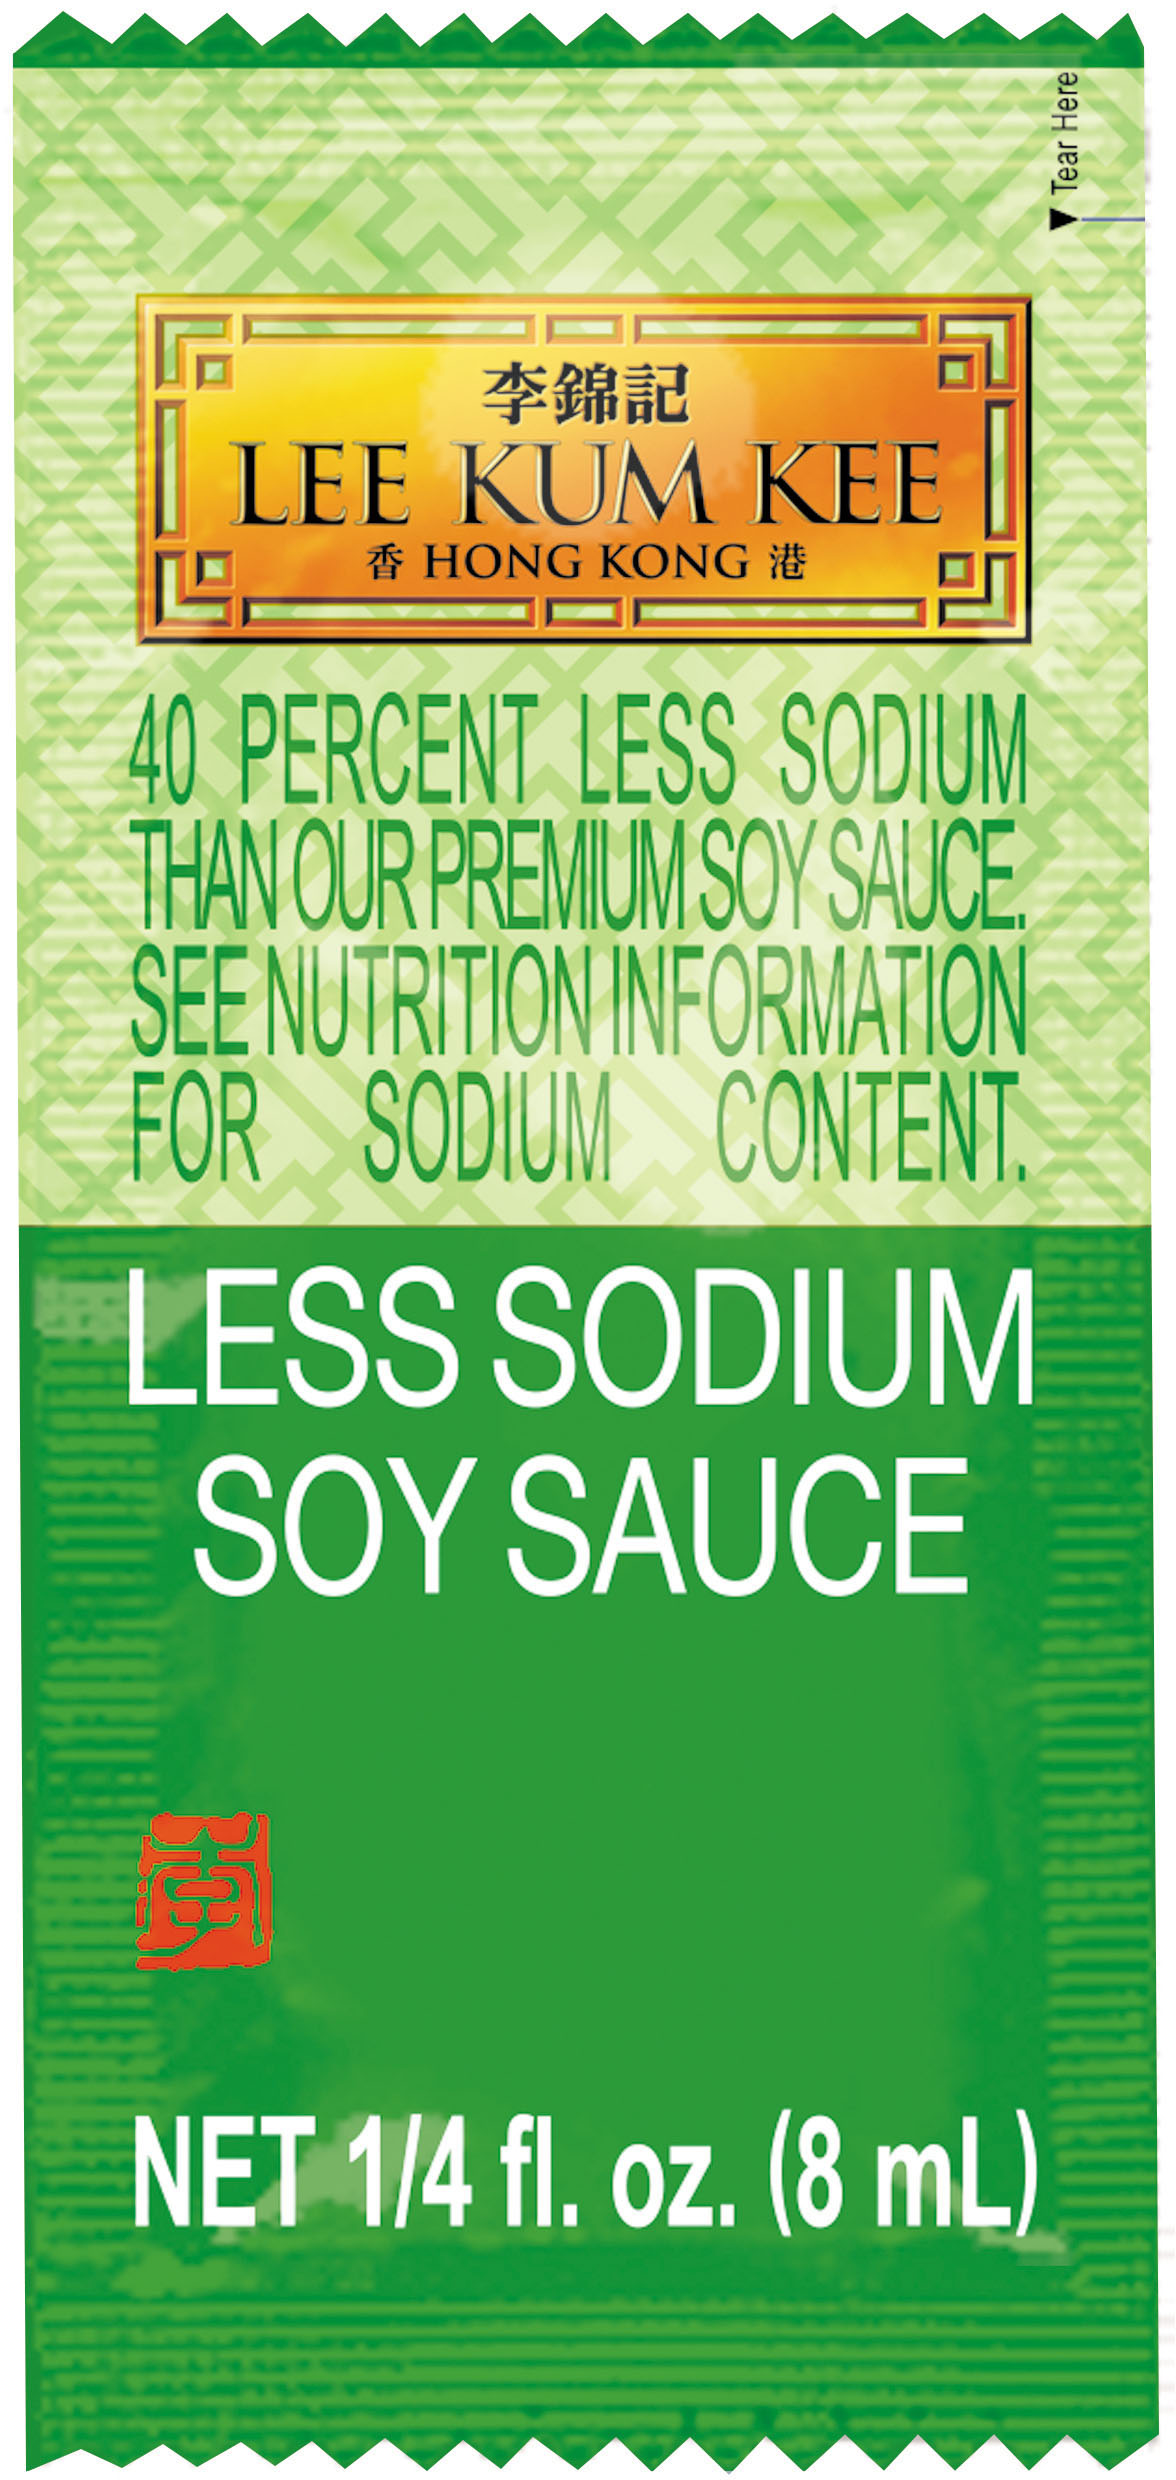 減鹽醬油 1/4 fl. oz. (8 mL)